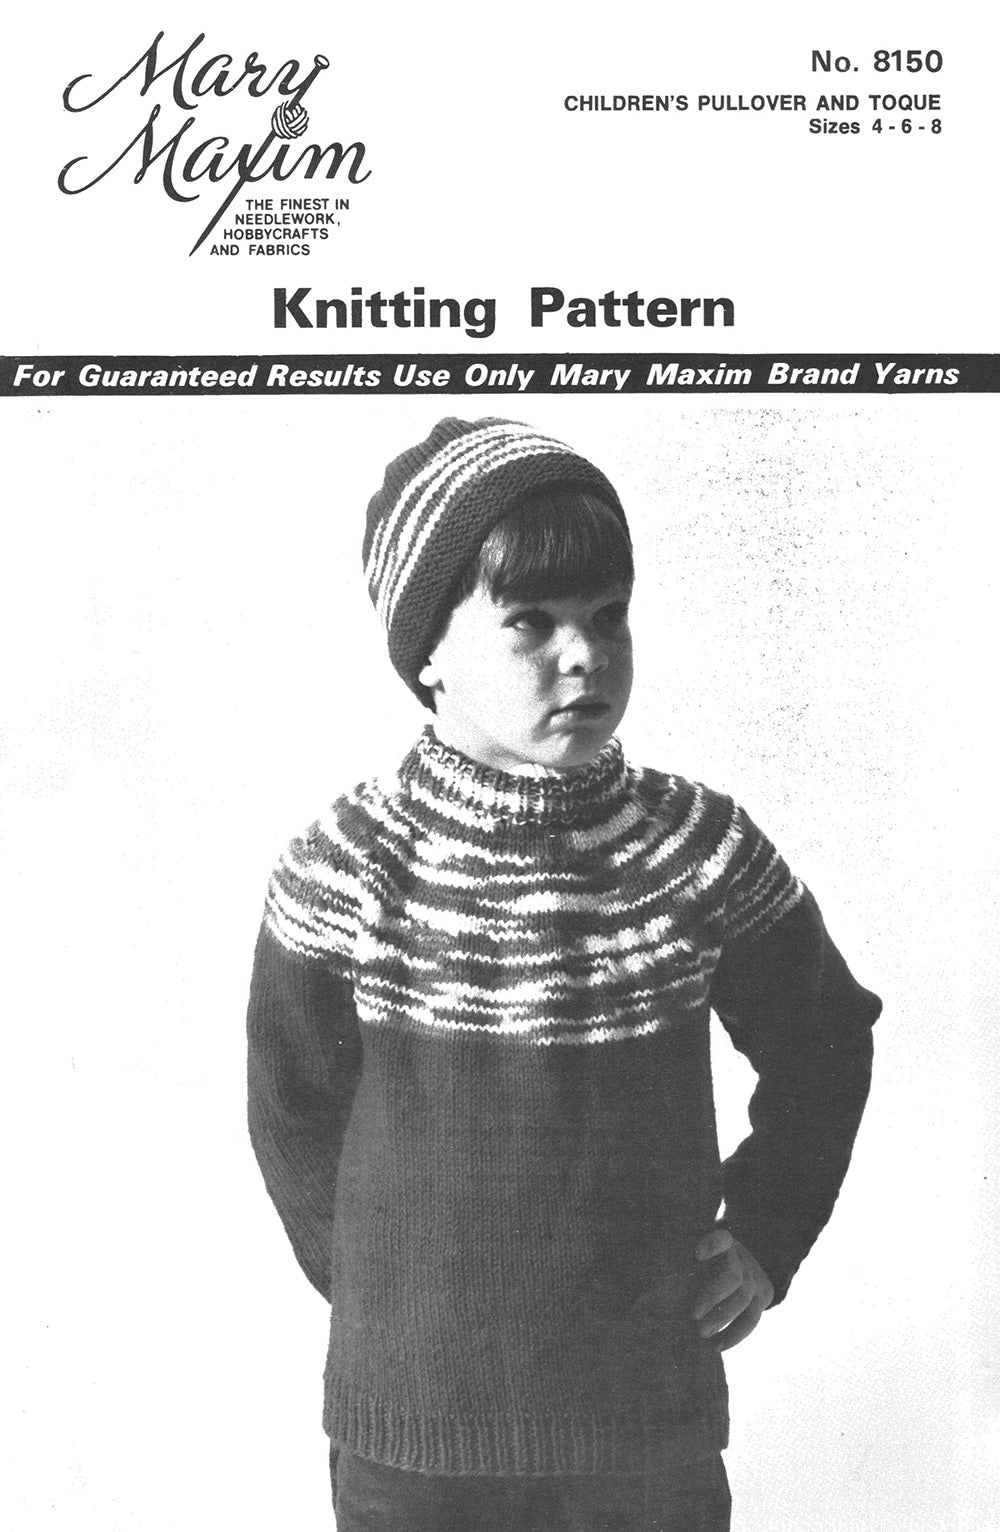 Children's Pullover Toque Pattern